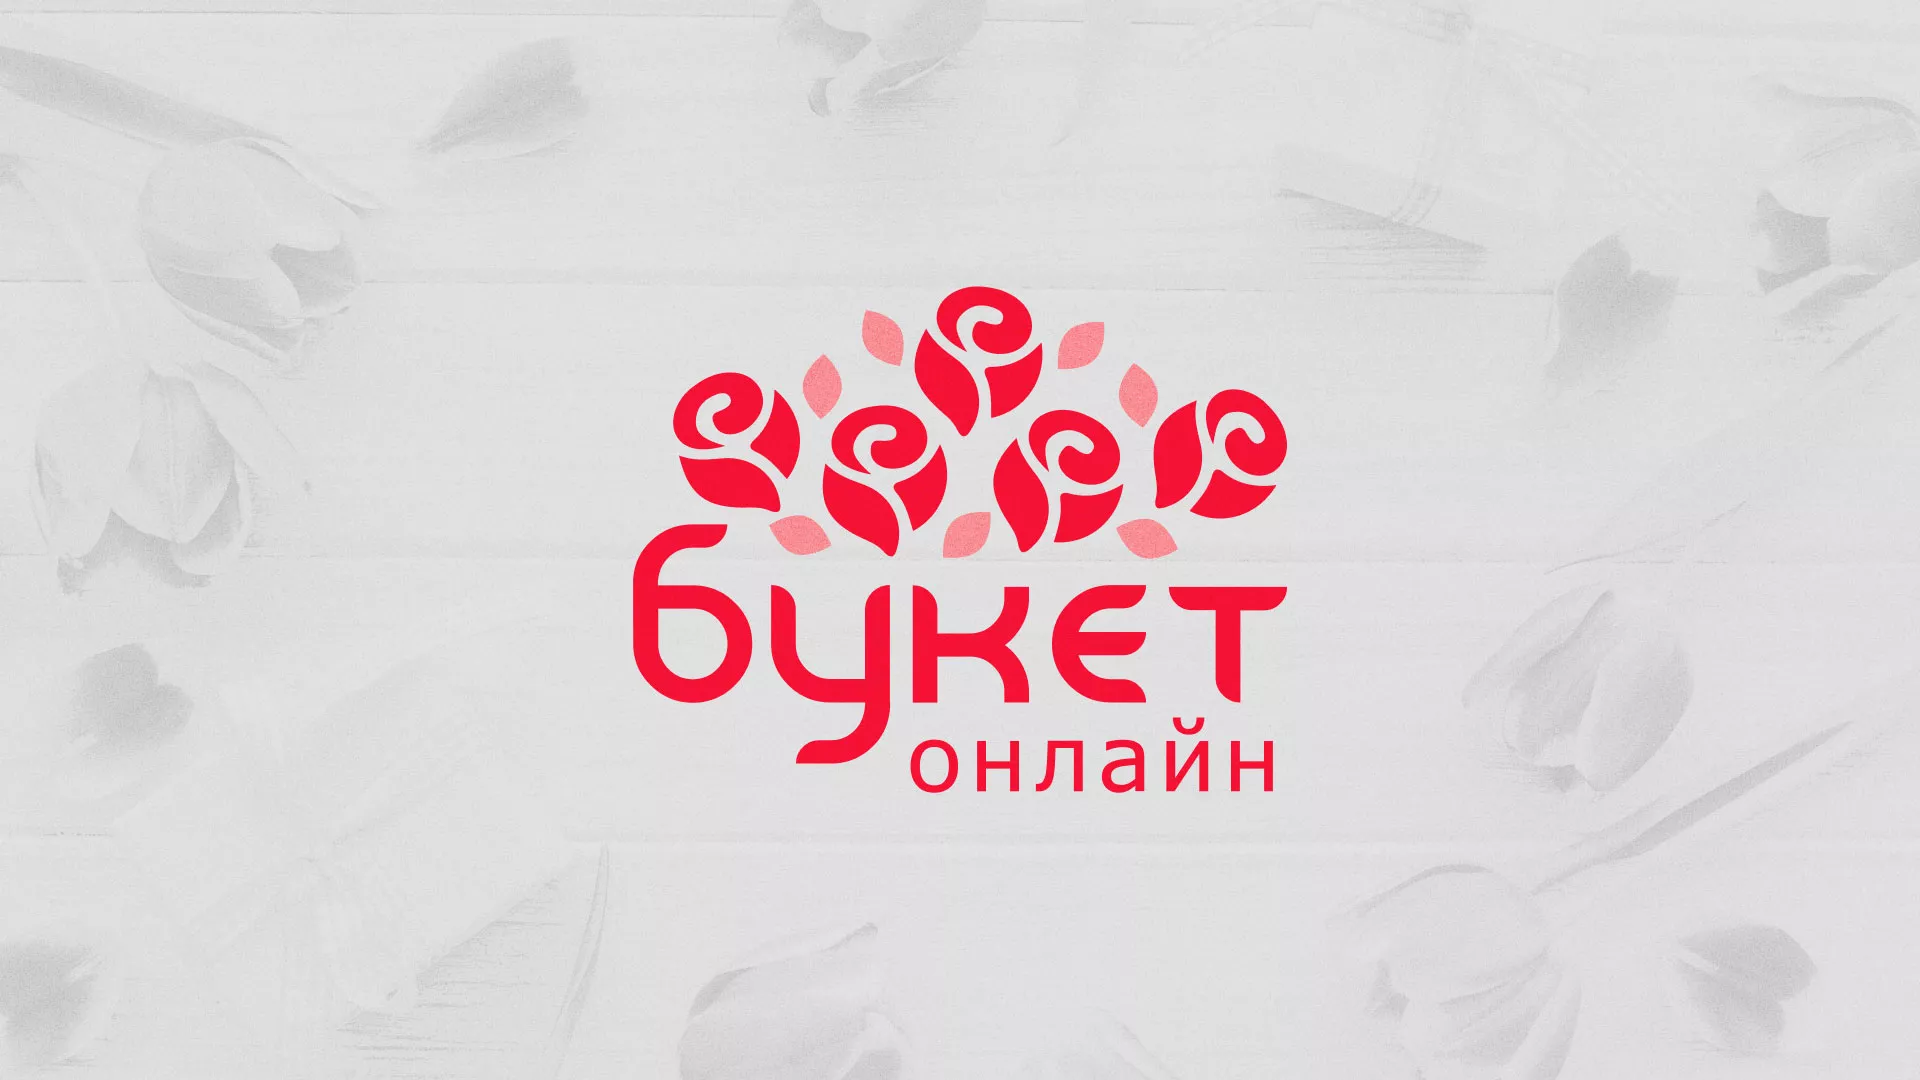 Создание интернет-магазина «Букет-онлайн» по цветам в Вытегре